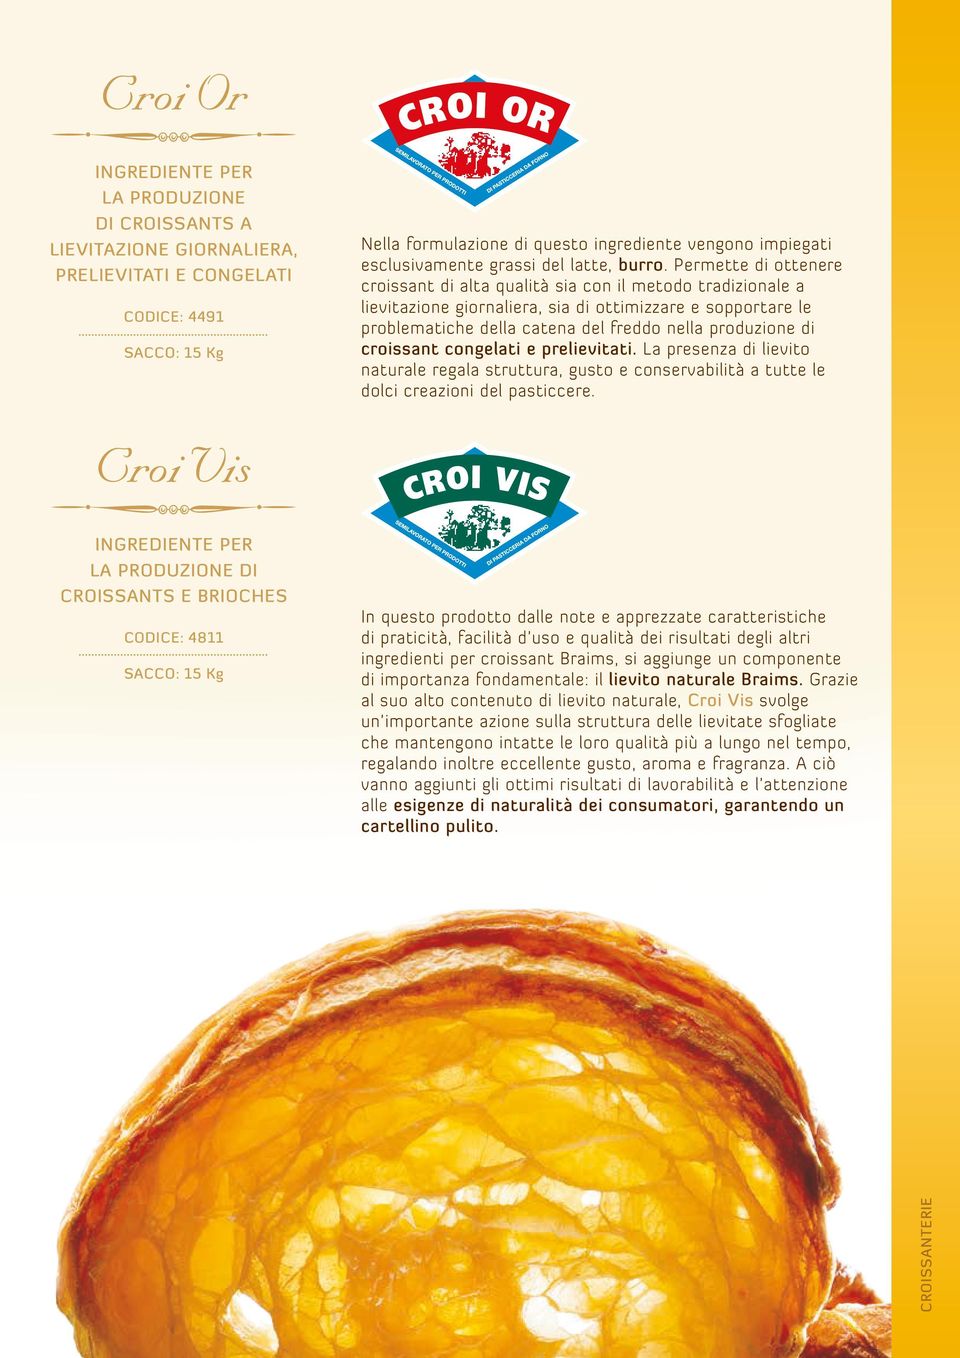 Permette di ottenere croissant di alta qualità sia con il metodo tradizionale a lievitazione giornaliera, sia di ottimizzare e sopportare le problematiche della catena del freddo nella produzione di